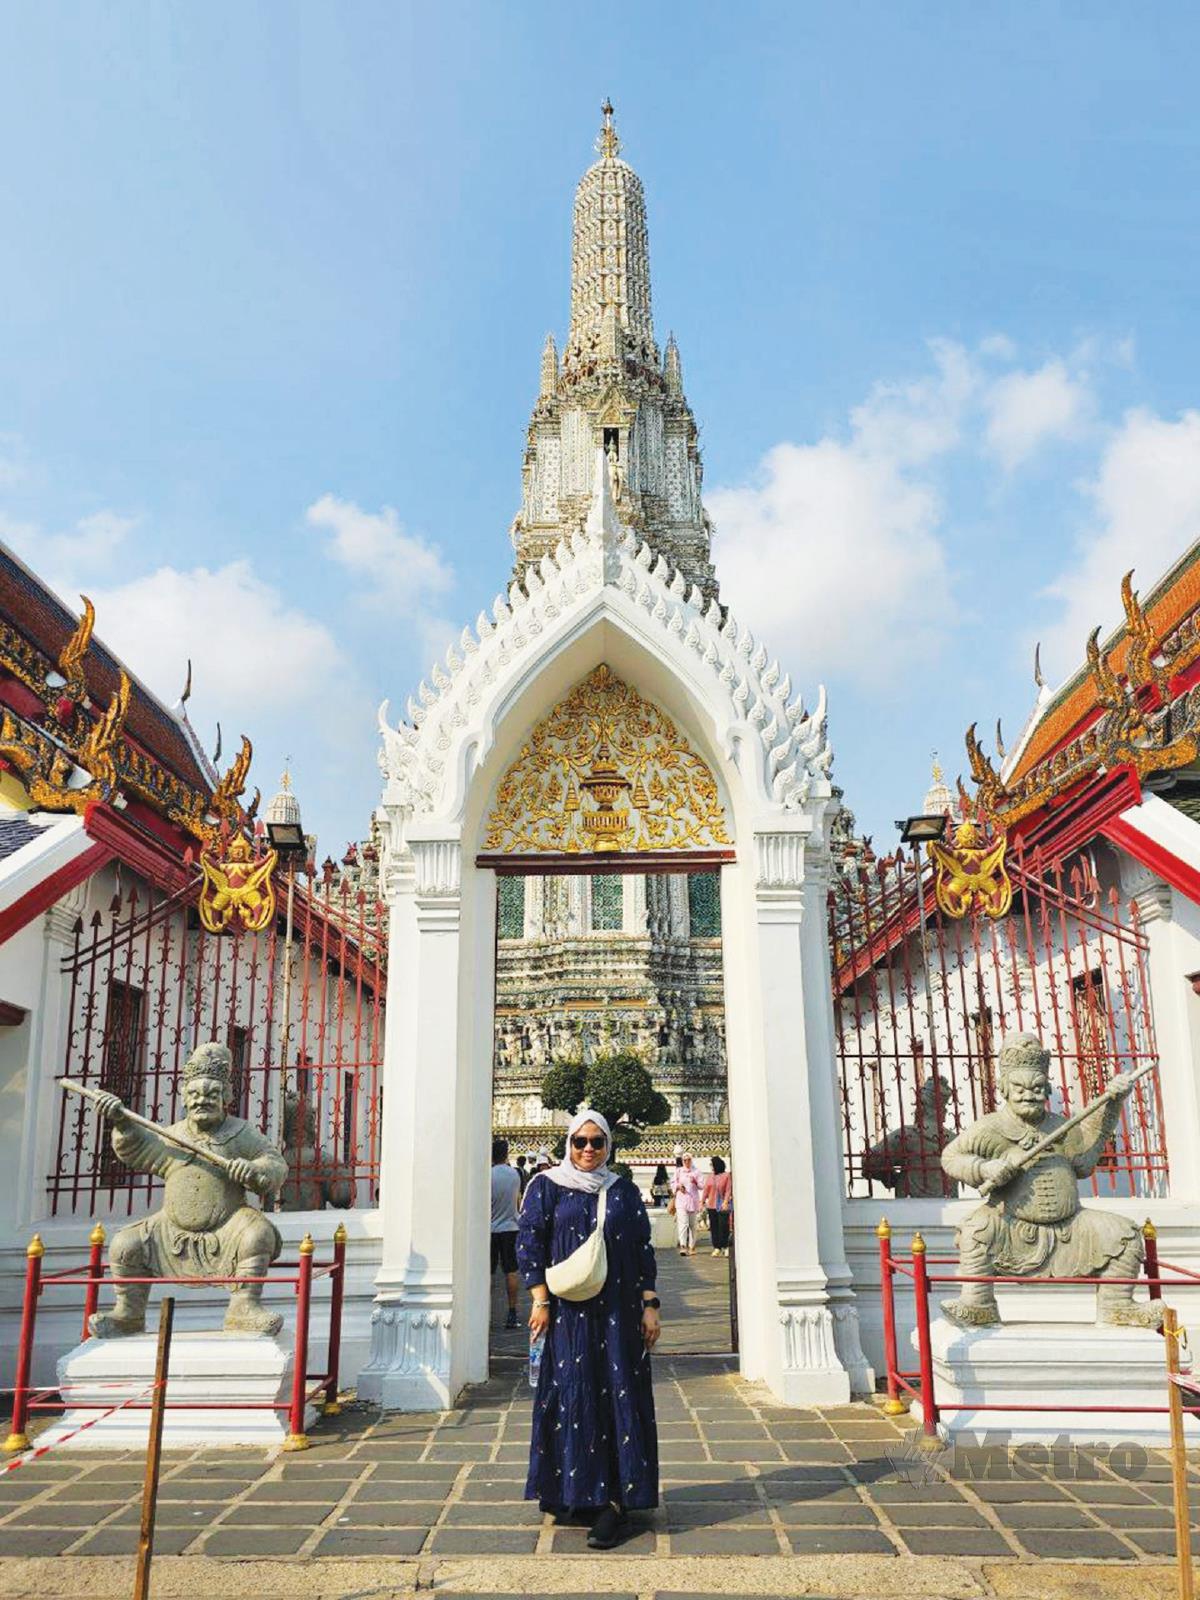 PENULIS di hadapan pintu masuk Wat Arun.